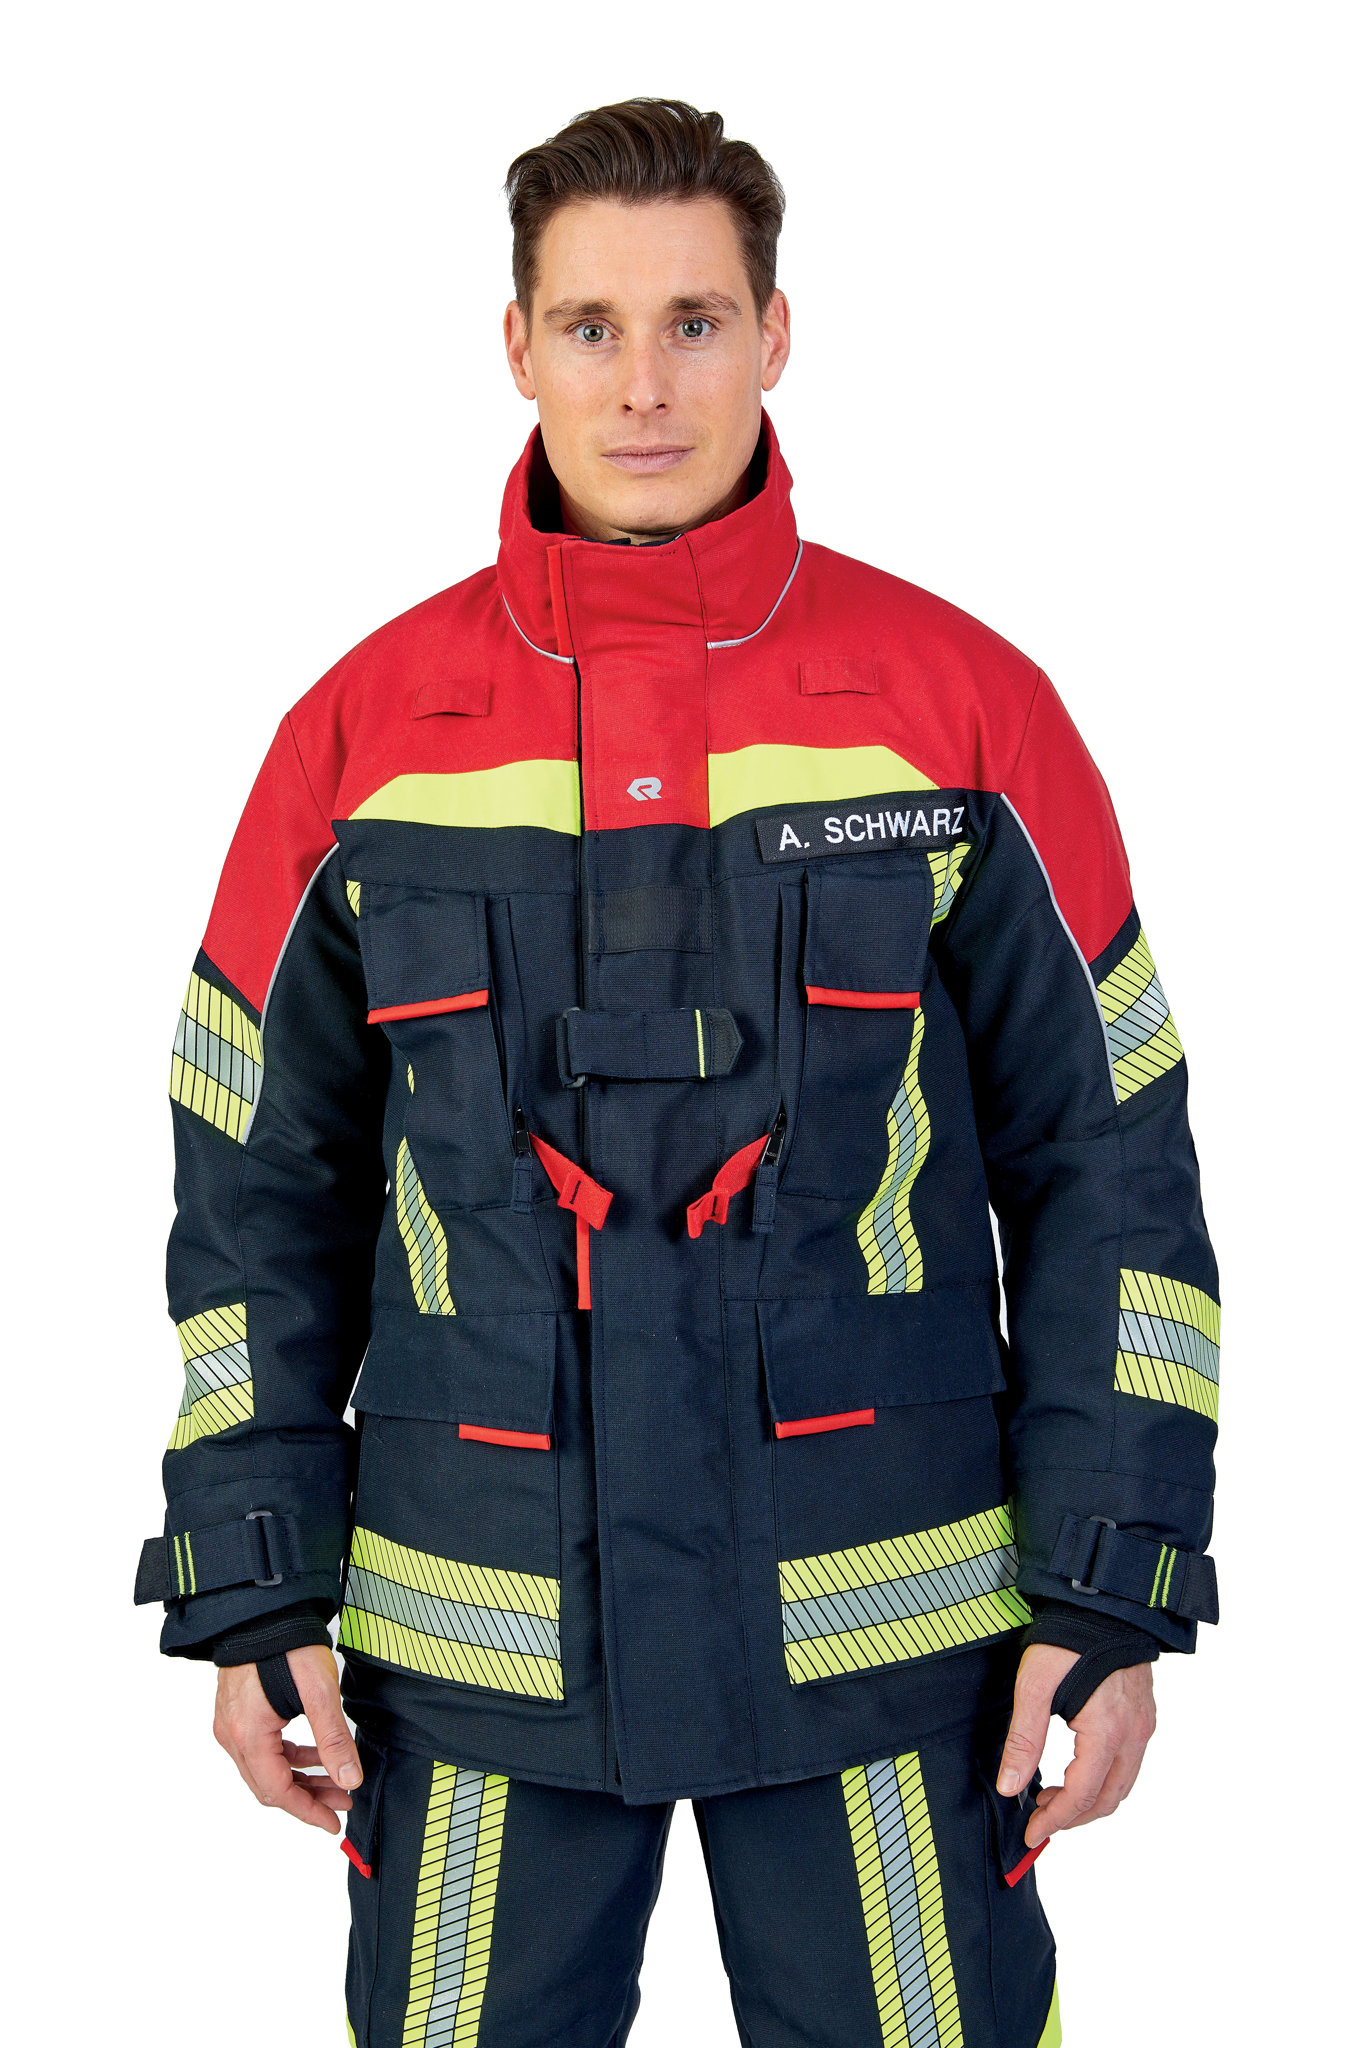 Bild von ROSENBAUER Feuerwehreinsatzjacke FIRE FLEX, NOMEX NXT, schwarzblau/rot, Gr. 48-50 B